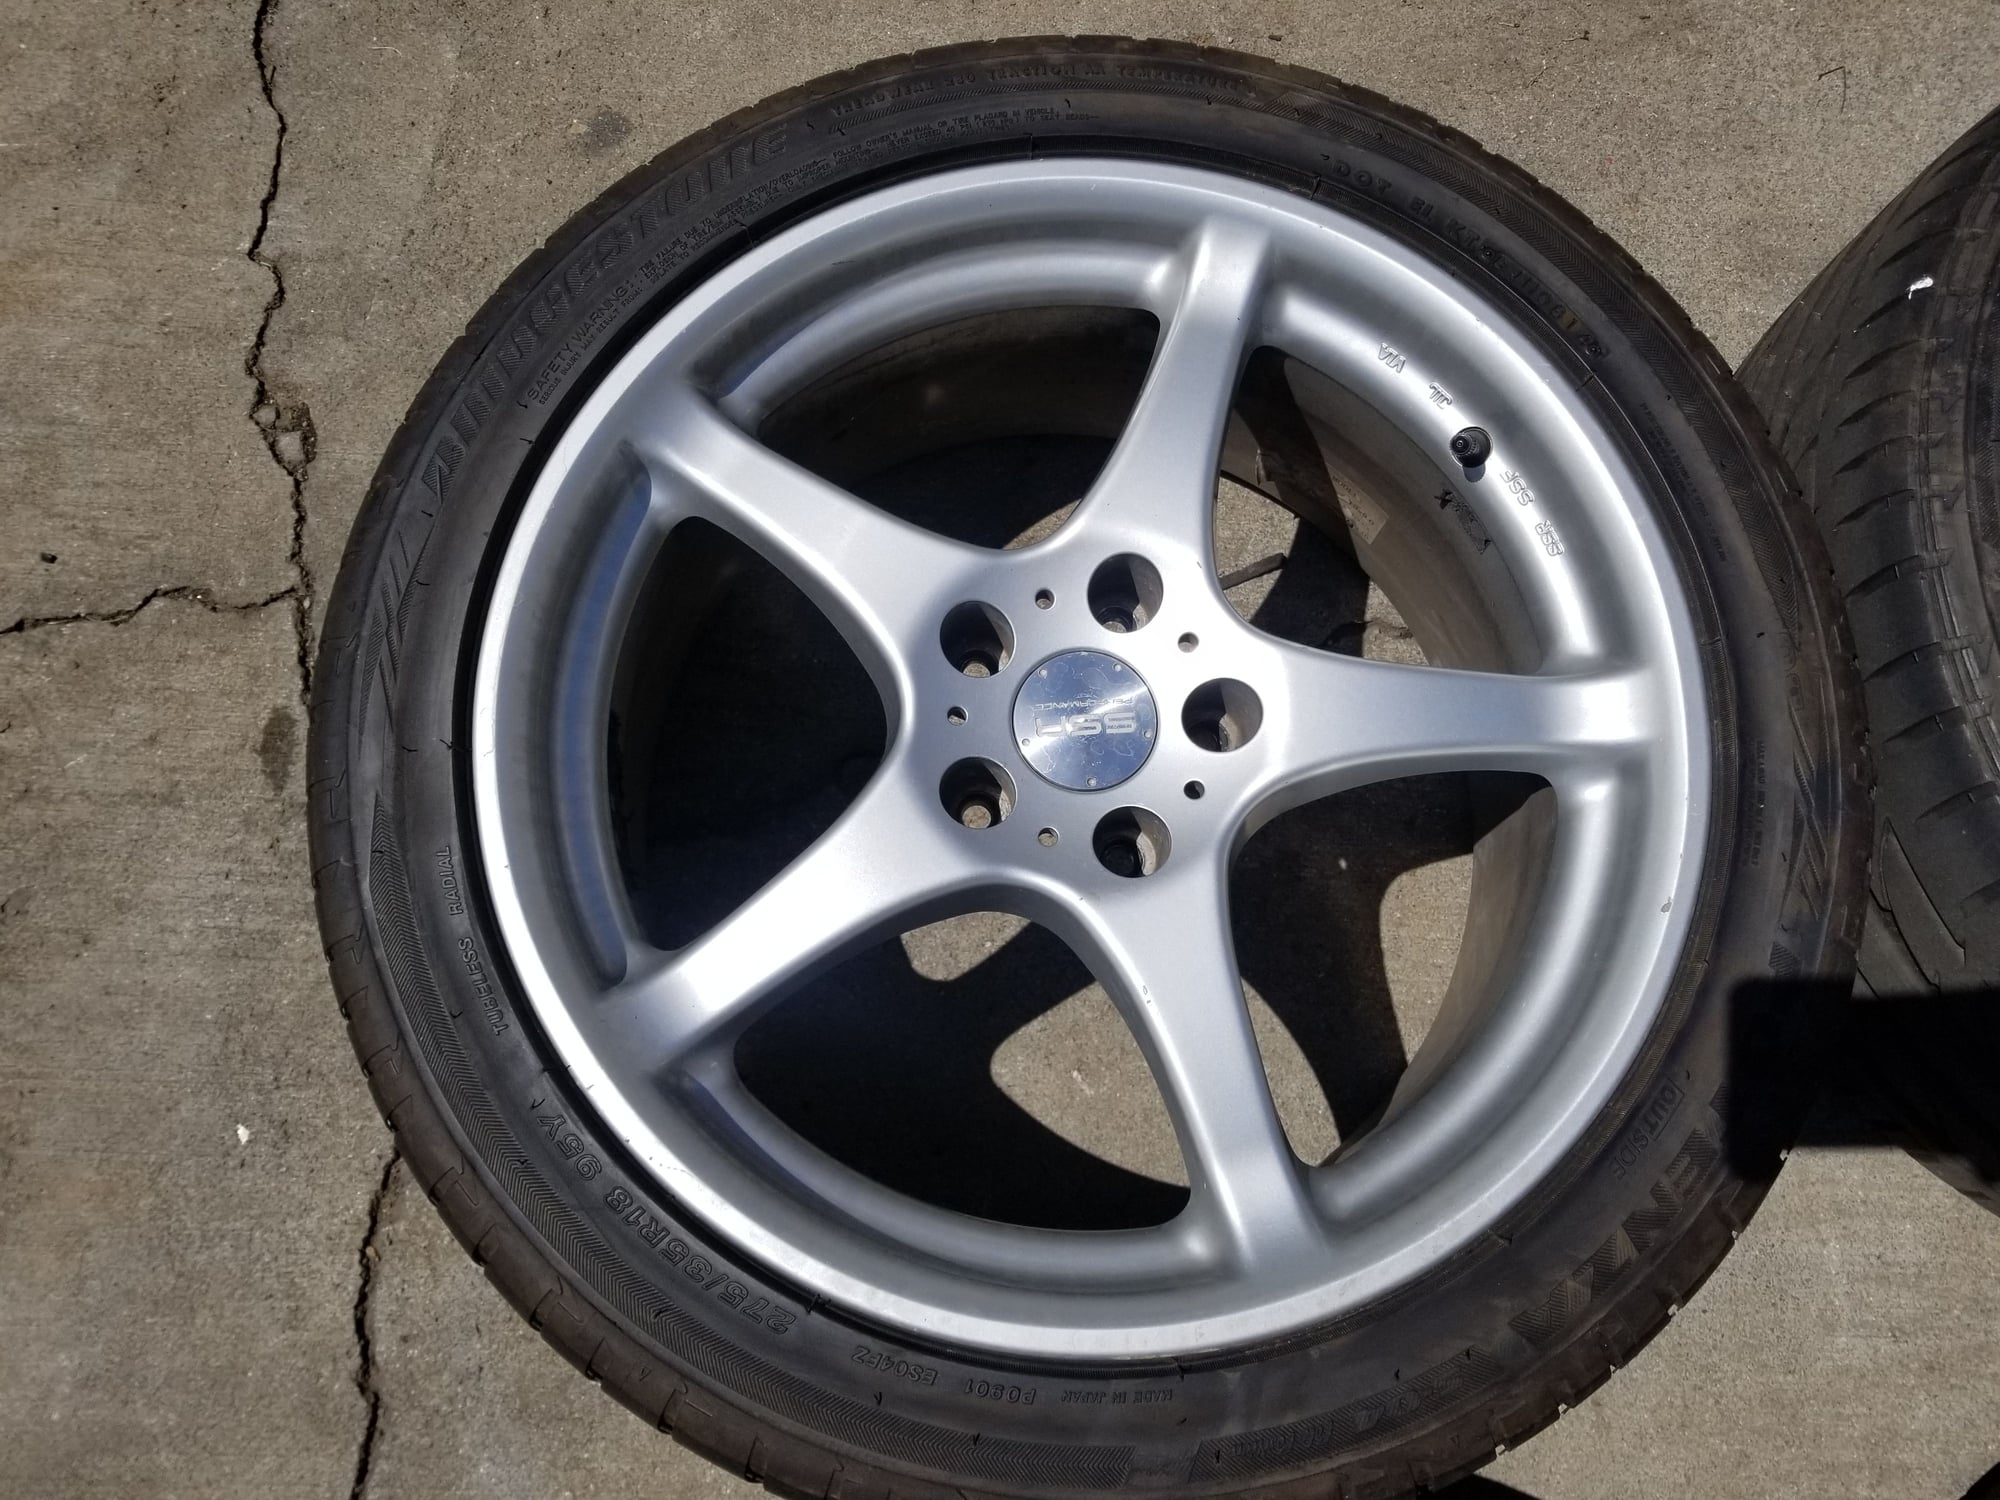 Wheels and Tires/Axles - SSR Integral wheels 17x8F 18x9R w/ new Bridgestone Potenza S04 tires - Used - Morristown, TN 37814, United States